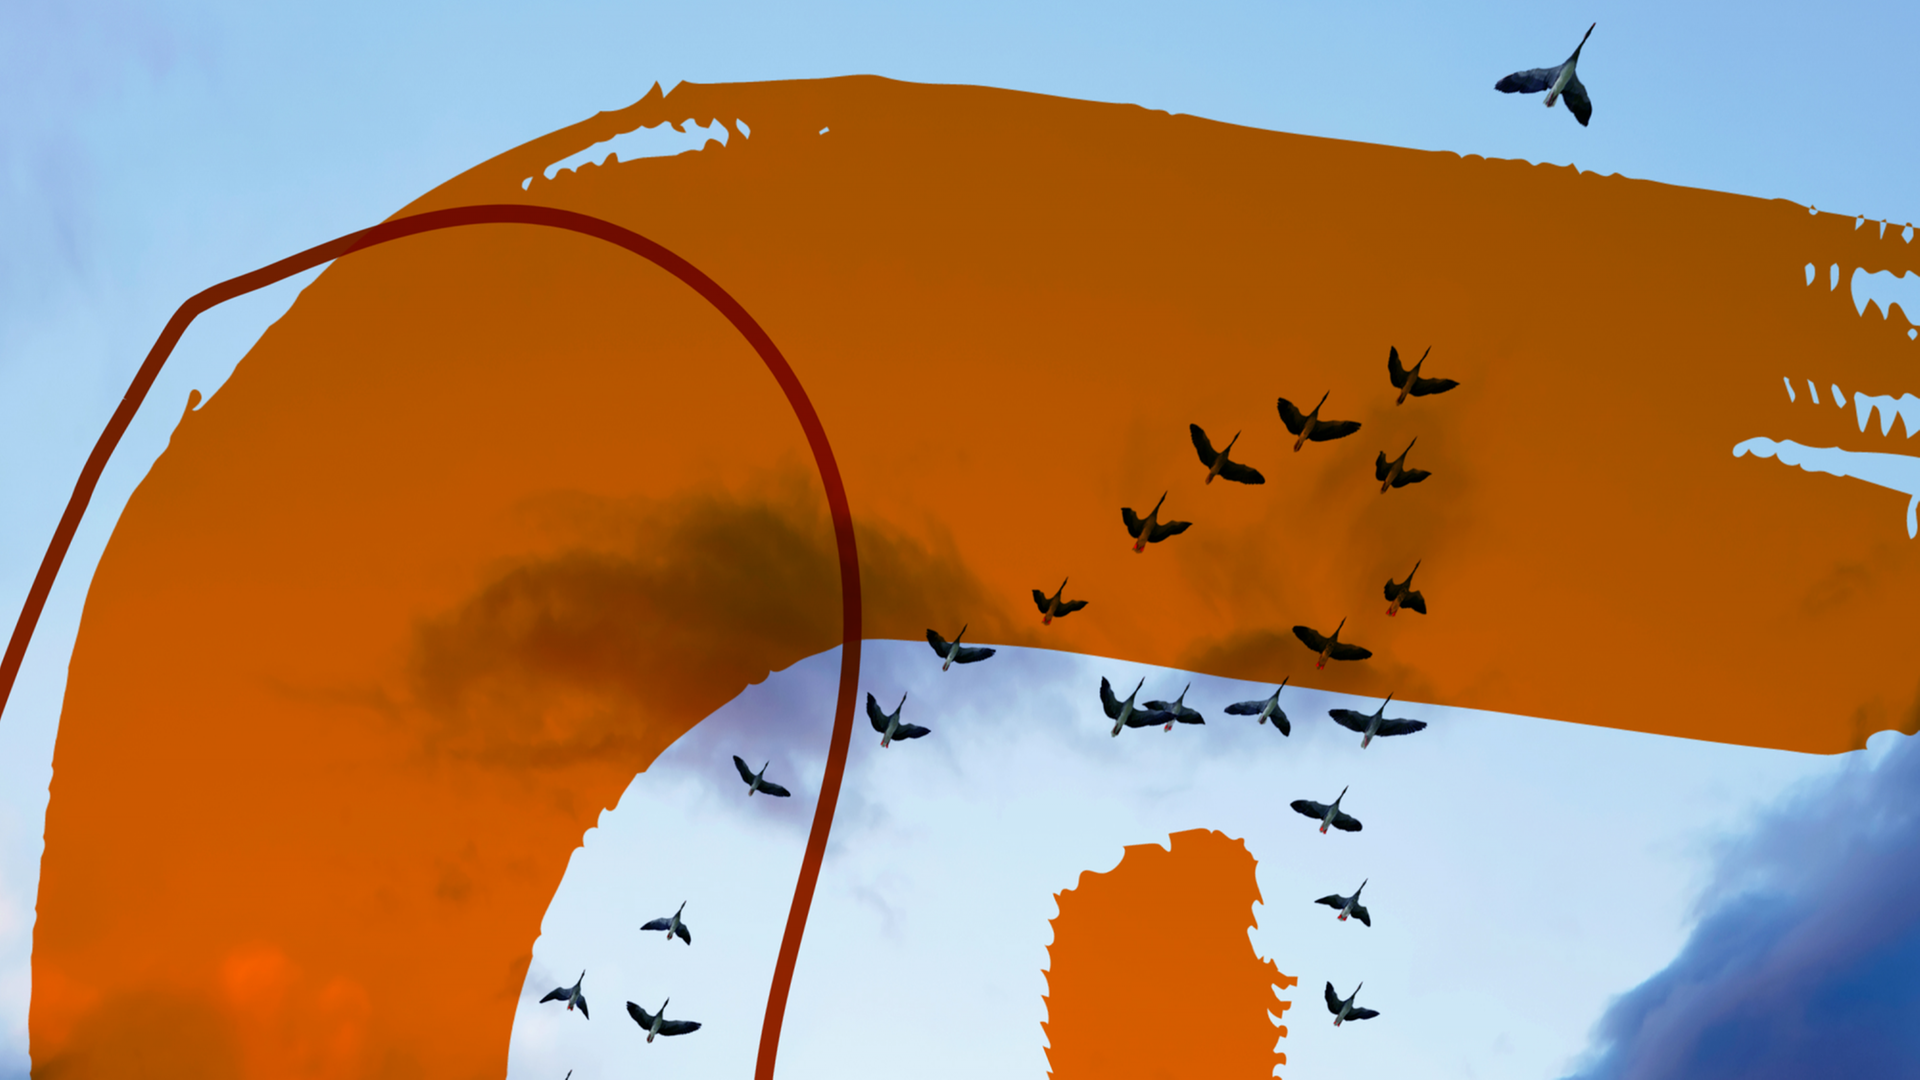 Das Bild zeigt das Podcast-Logo der Sendung "Religionen". Zu sehen sind die Schemen von Zugvögeln vor einem bewölkten Abendhimmel. Darüber sind orange, halbtransparente Flächen und Linien zu sehen.